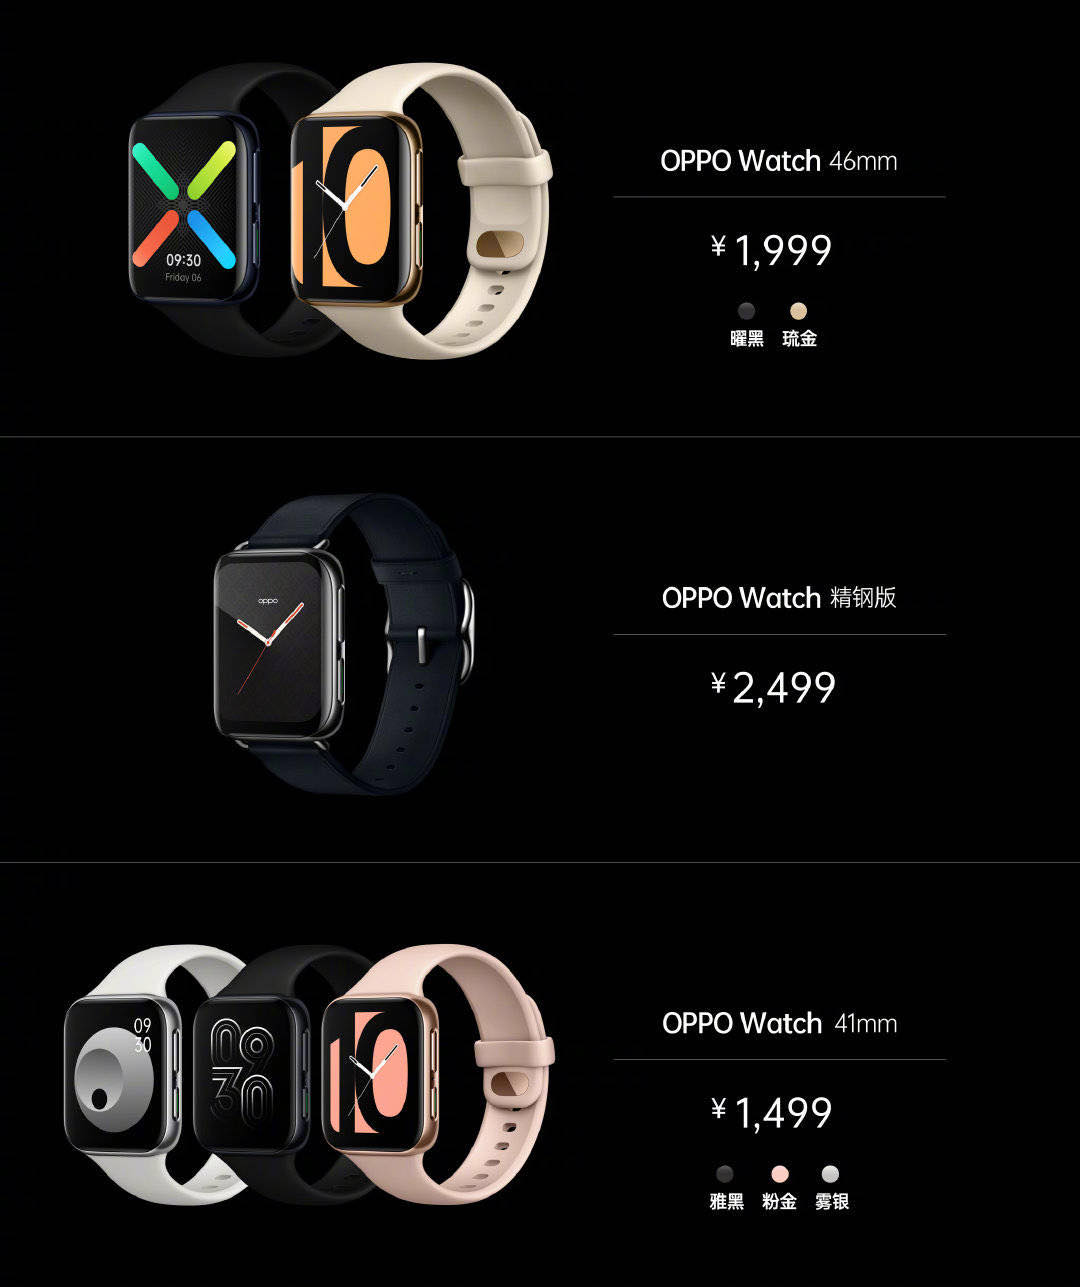 OPPO Watch chính thức
ra mắt: Thiết kế giống Apple Watch, hỗ trợ eSIM, sạc nhanh
VOOC, giá từ 5 triệu đồng